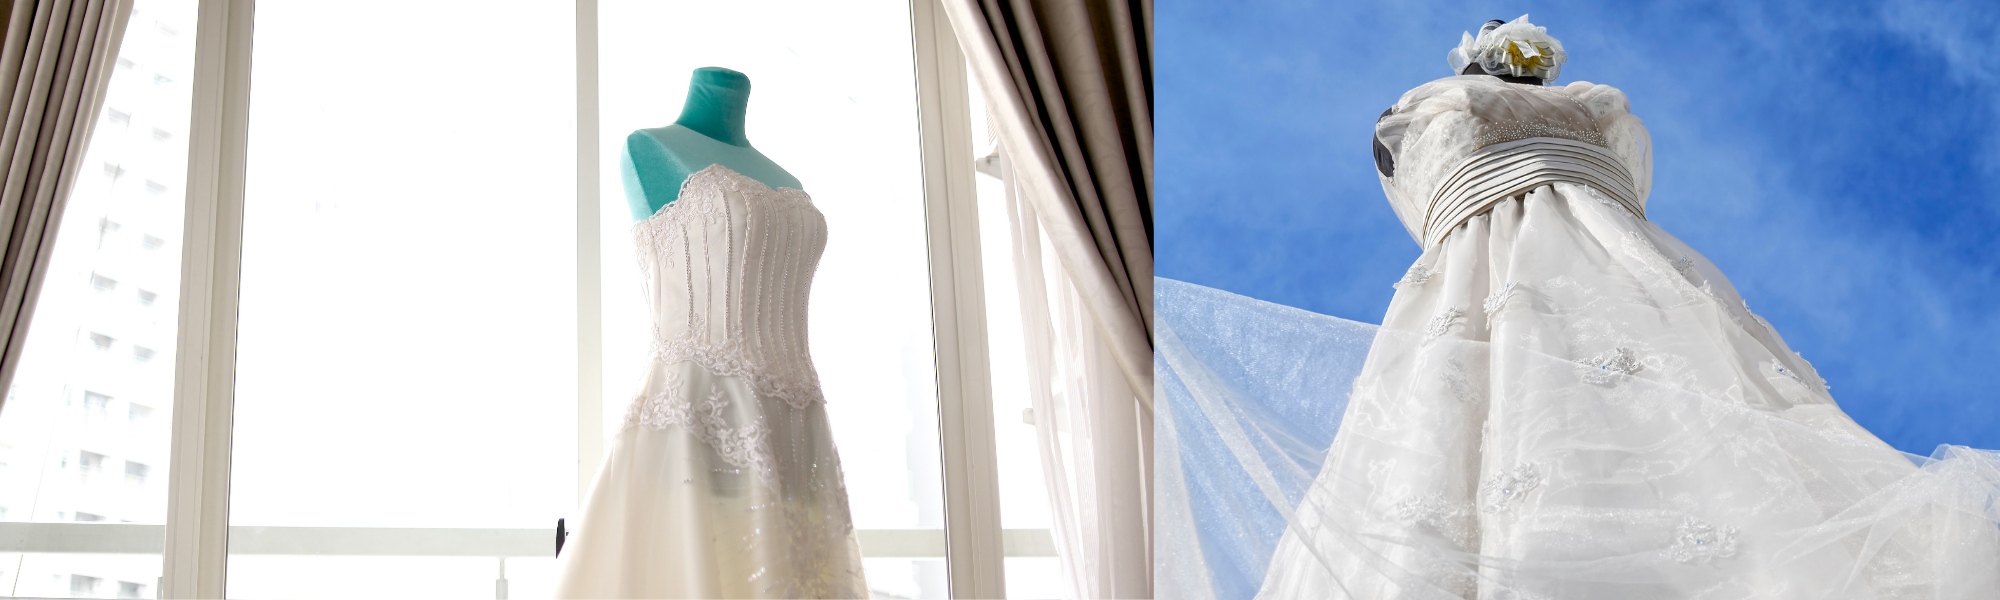 wedding gown restoration 